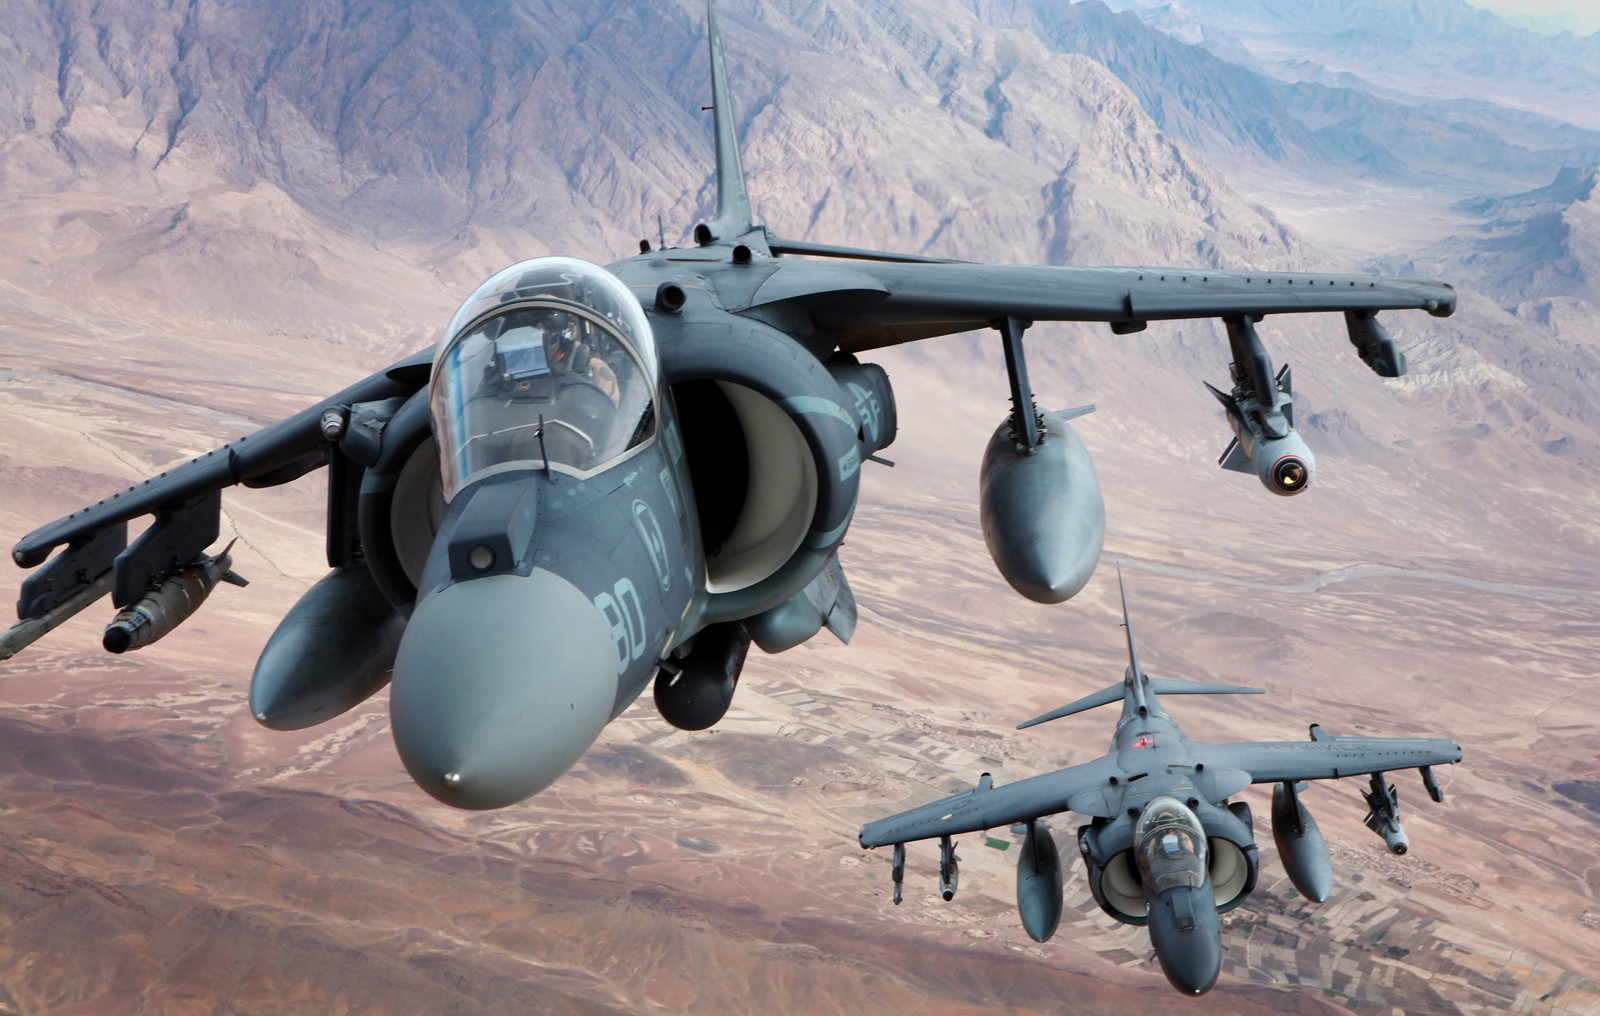 1626-airplane-desert-military-Harrier-aircraft-AV-8B_Harrier_II.jpg